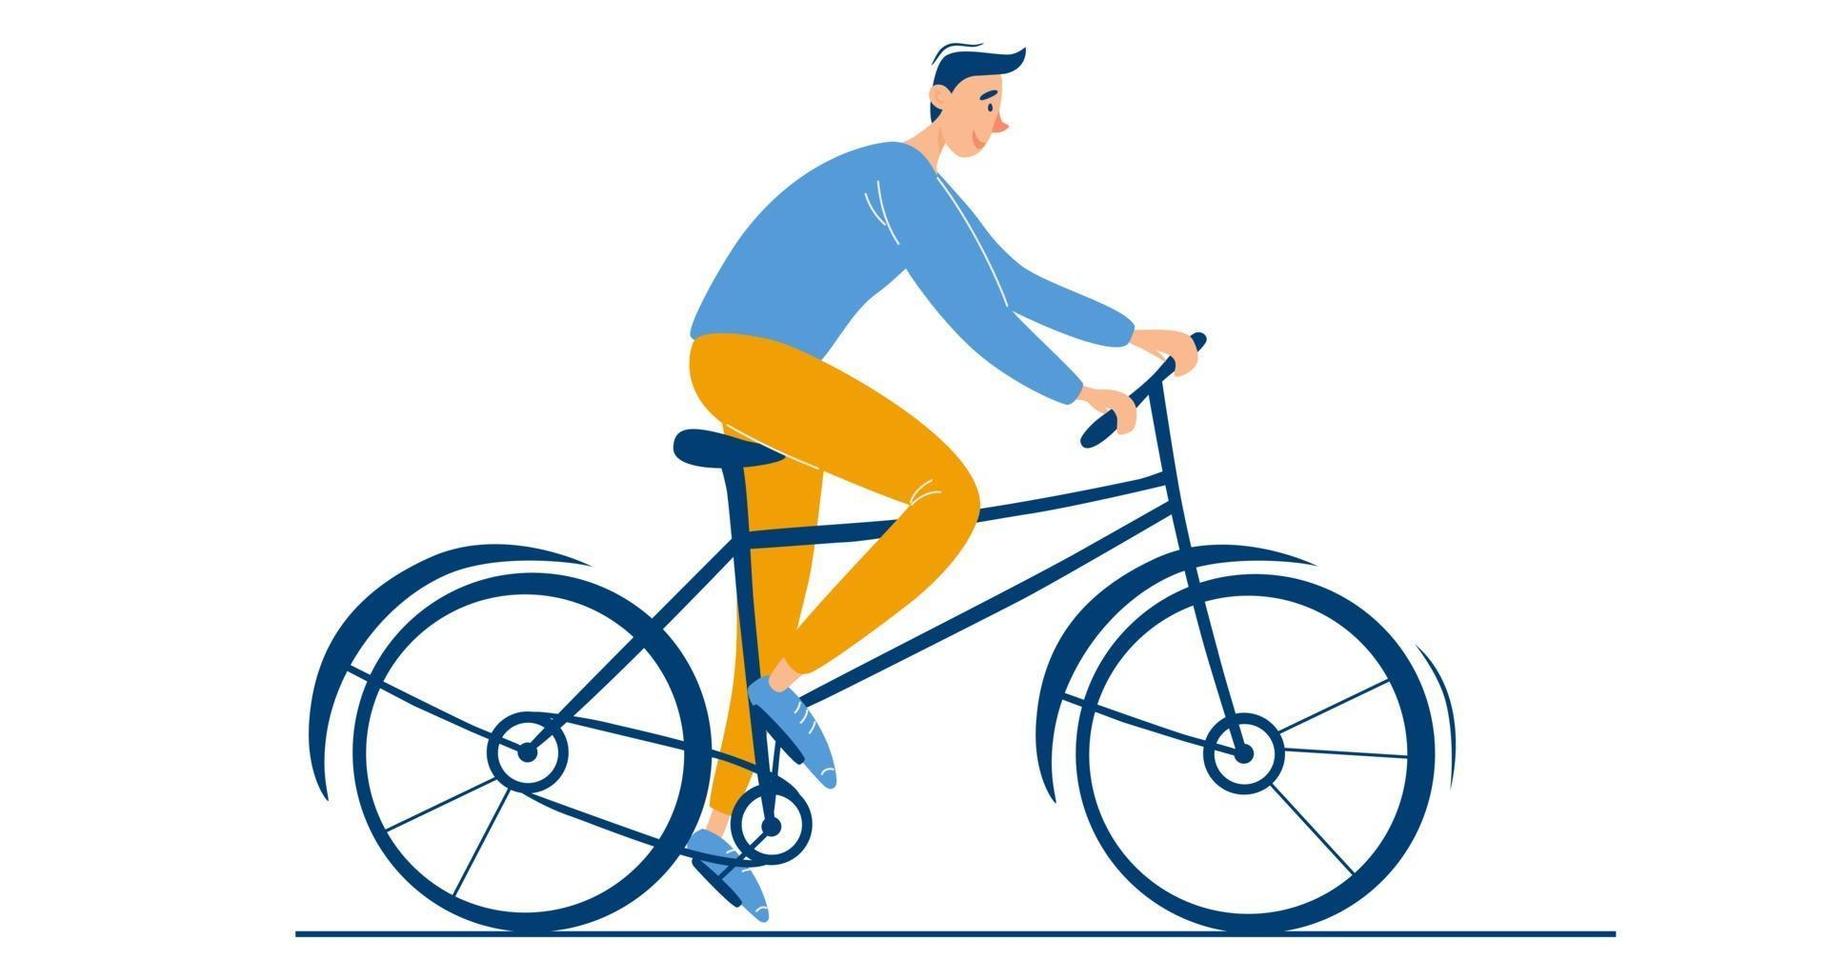 jovem rapaz feliz anda de bicicleta personagem masculino sozinho verão ou primavera atividade de ciclismo cara elegante ao ar livre em ilustração vetorial plana de bicicleta no fundo branco vetor